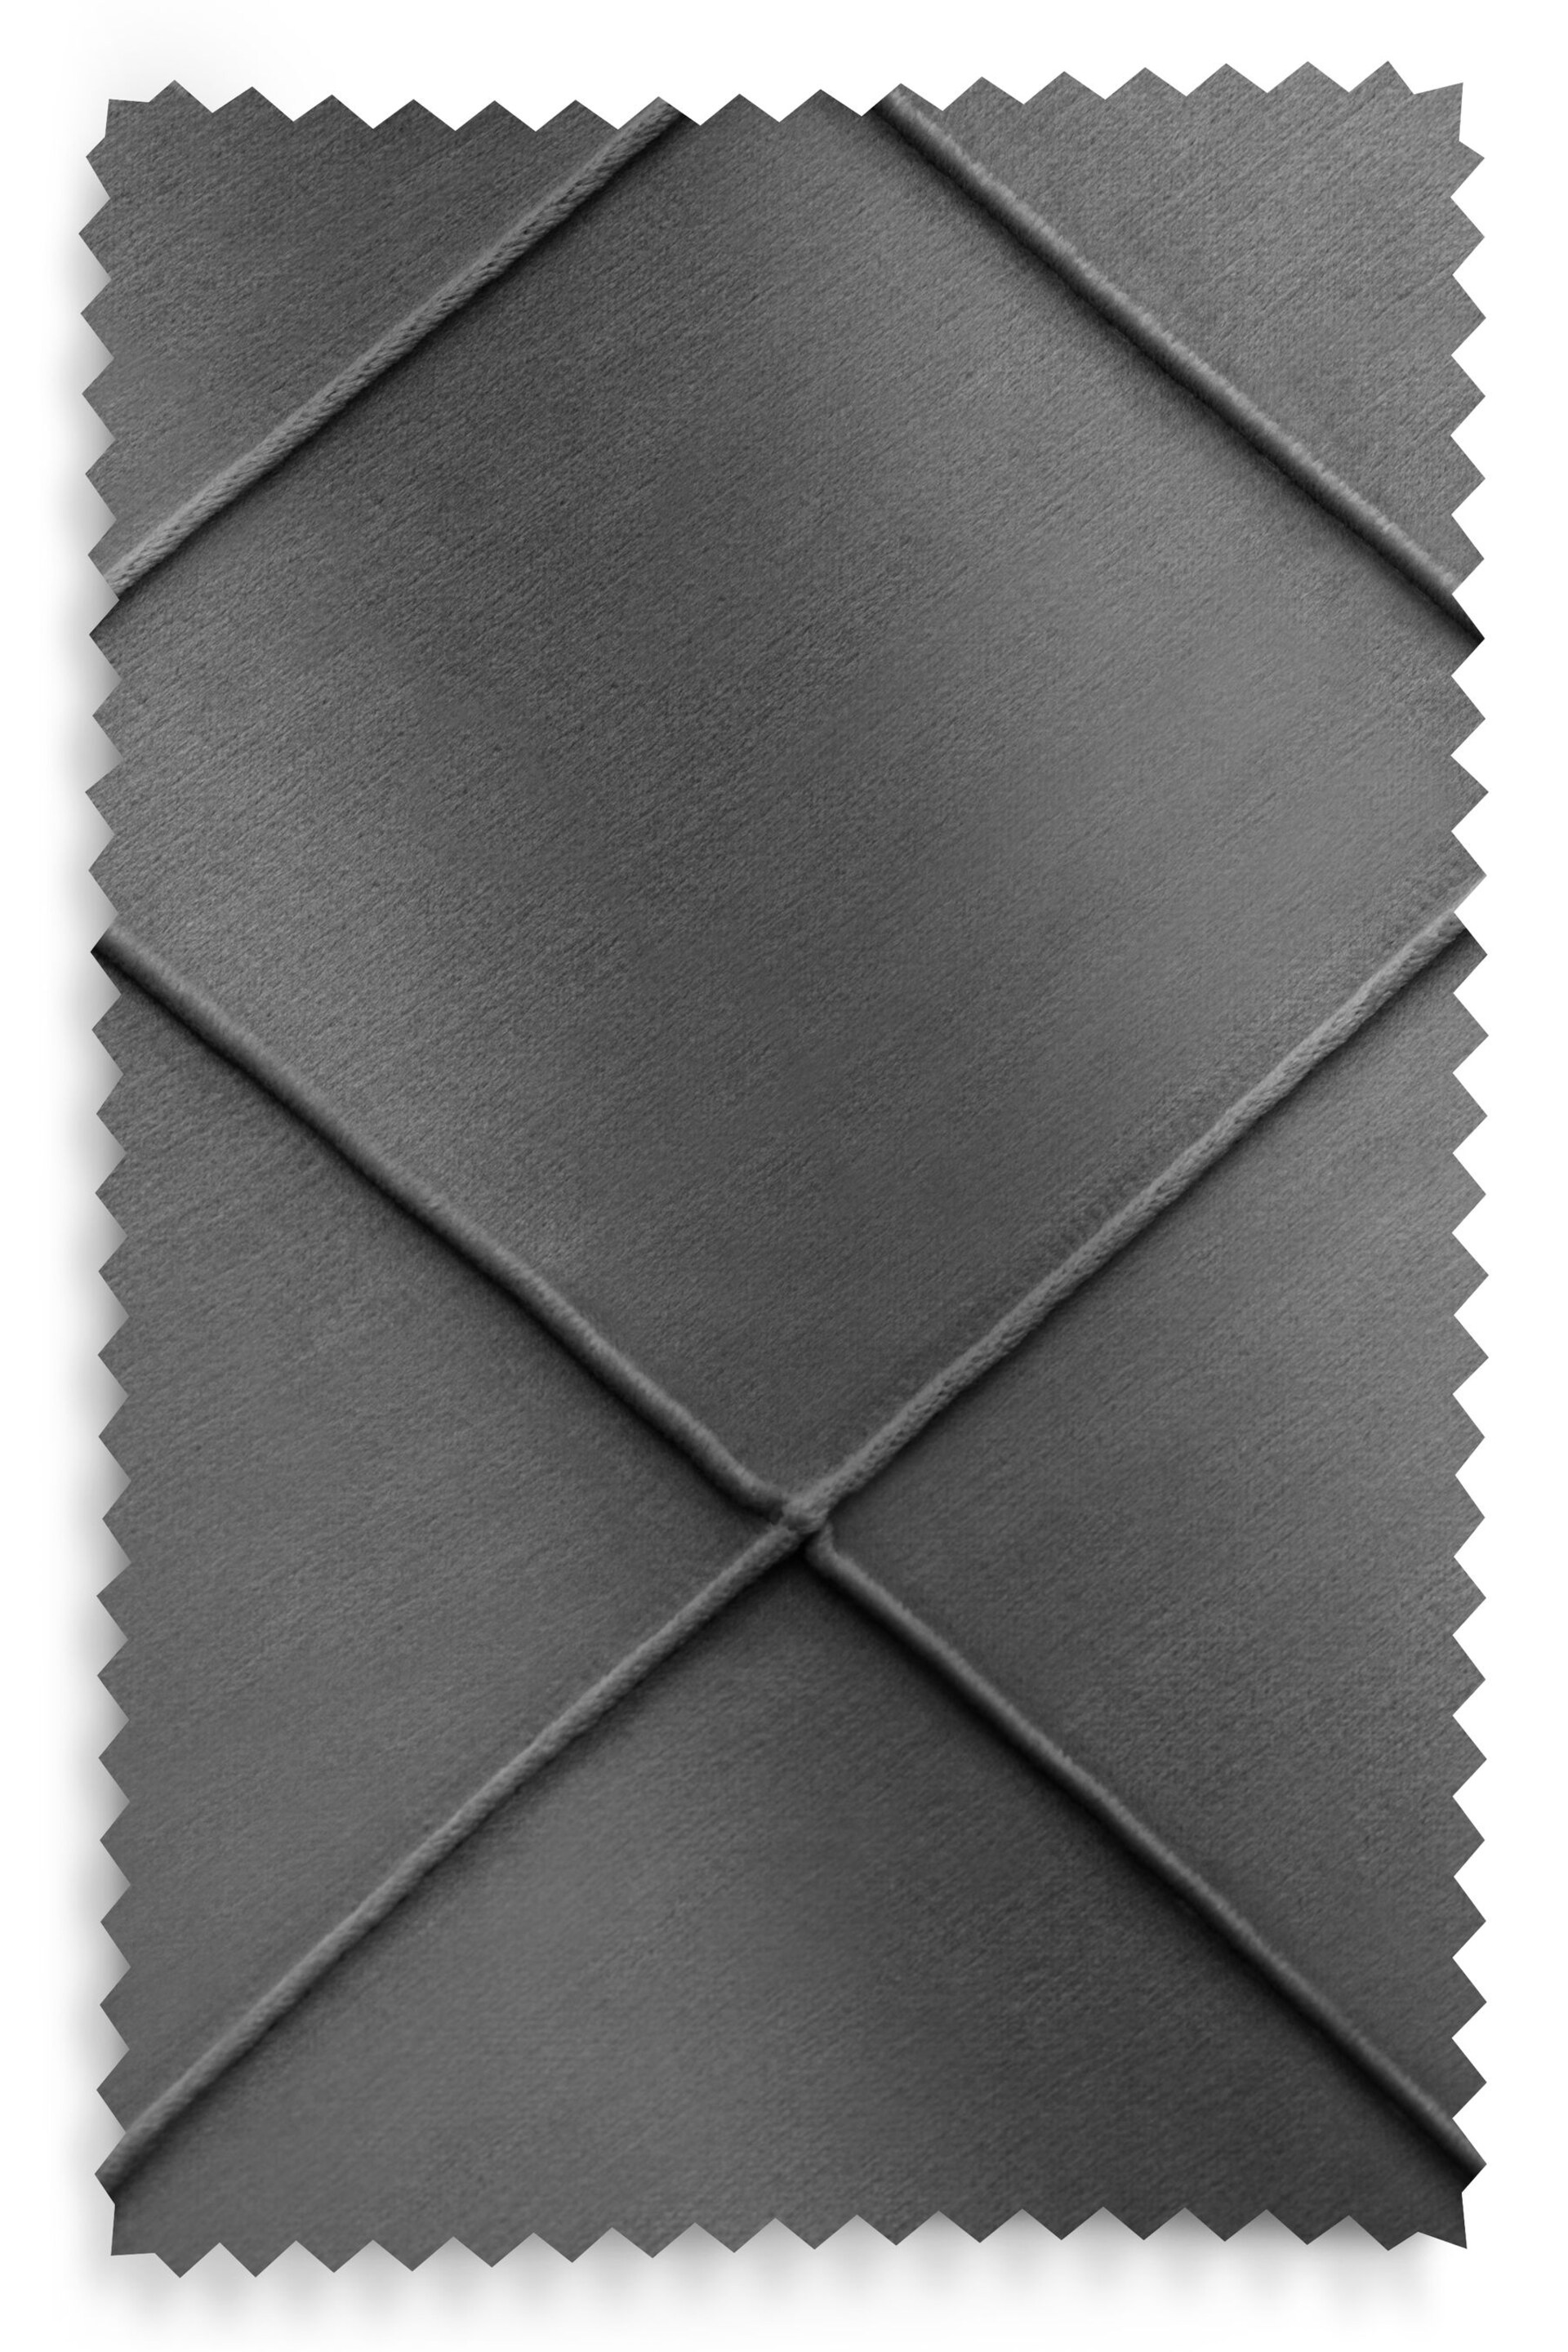 Grey Diamond Pleated Blackout Eyelet Curtains - Image 6 of 7